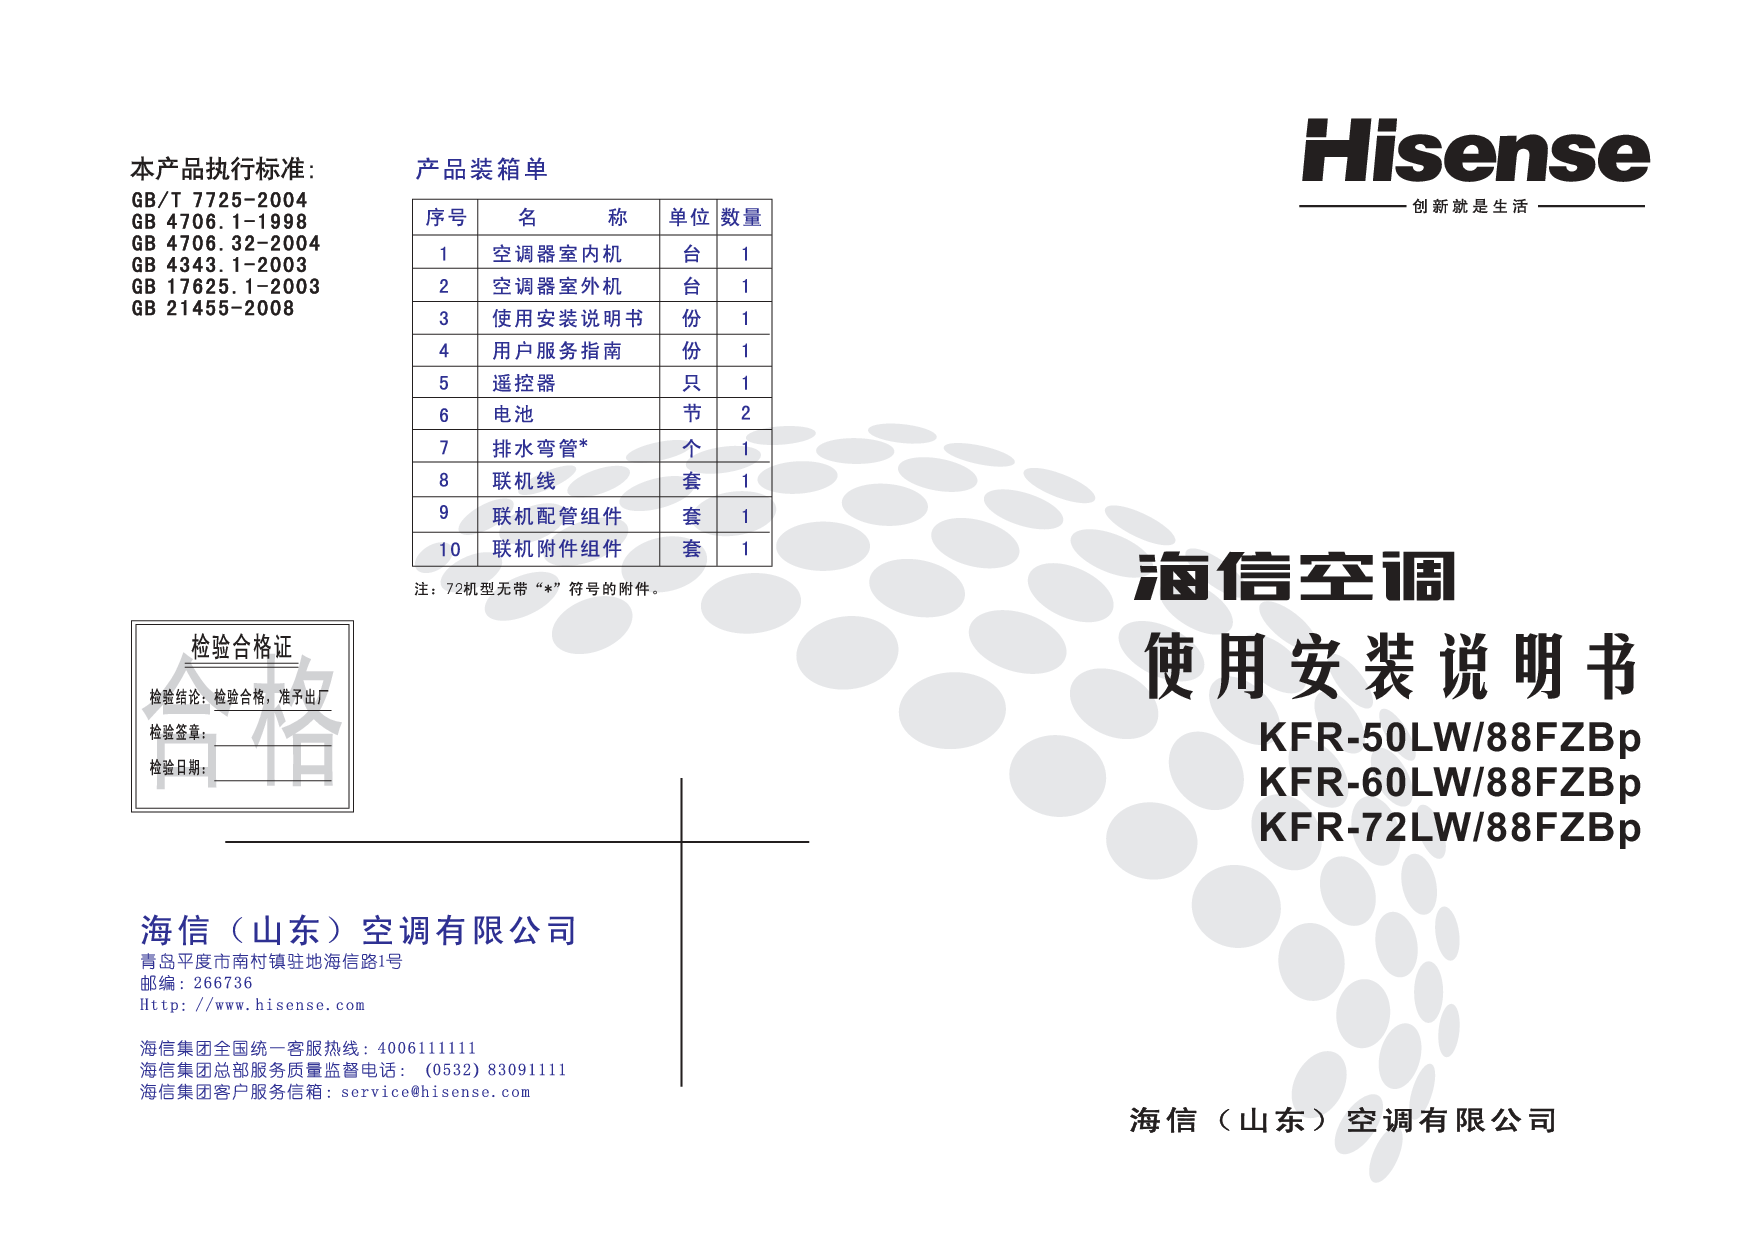 海信 Hisense KFR-50LW/88FZBp 使用说明书 封面